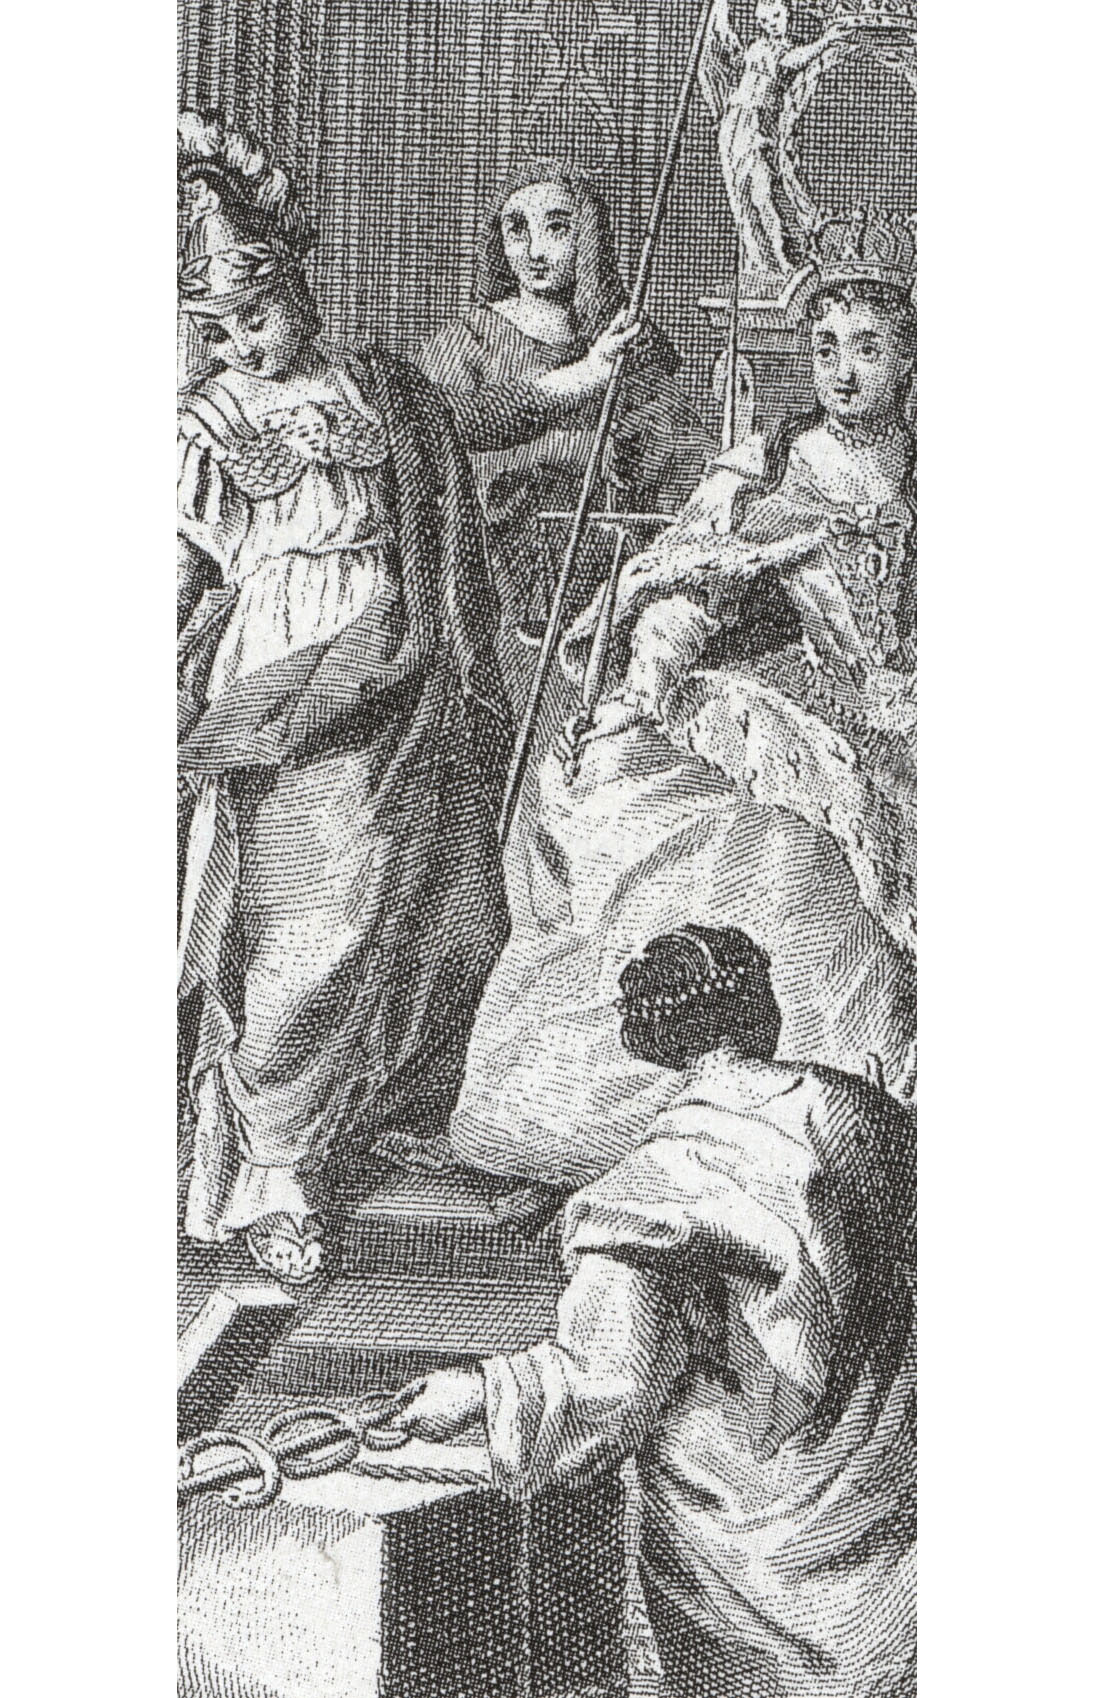 Х. Лоттес. "Анна Иоанновна на троне со скипетром в руках". Фрагмент. 1739.